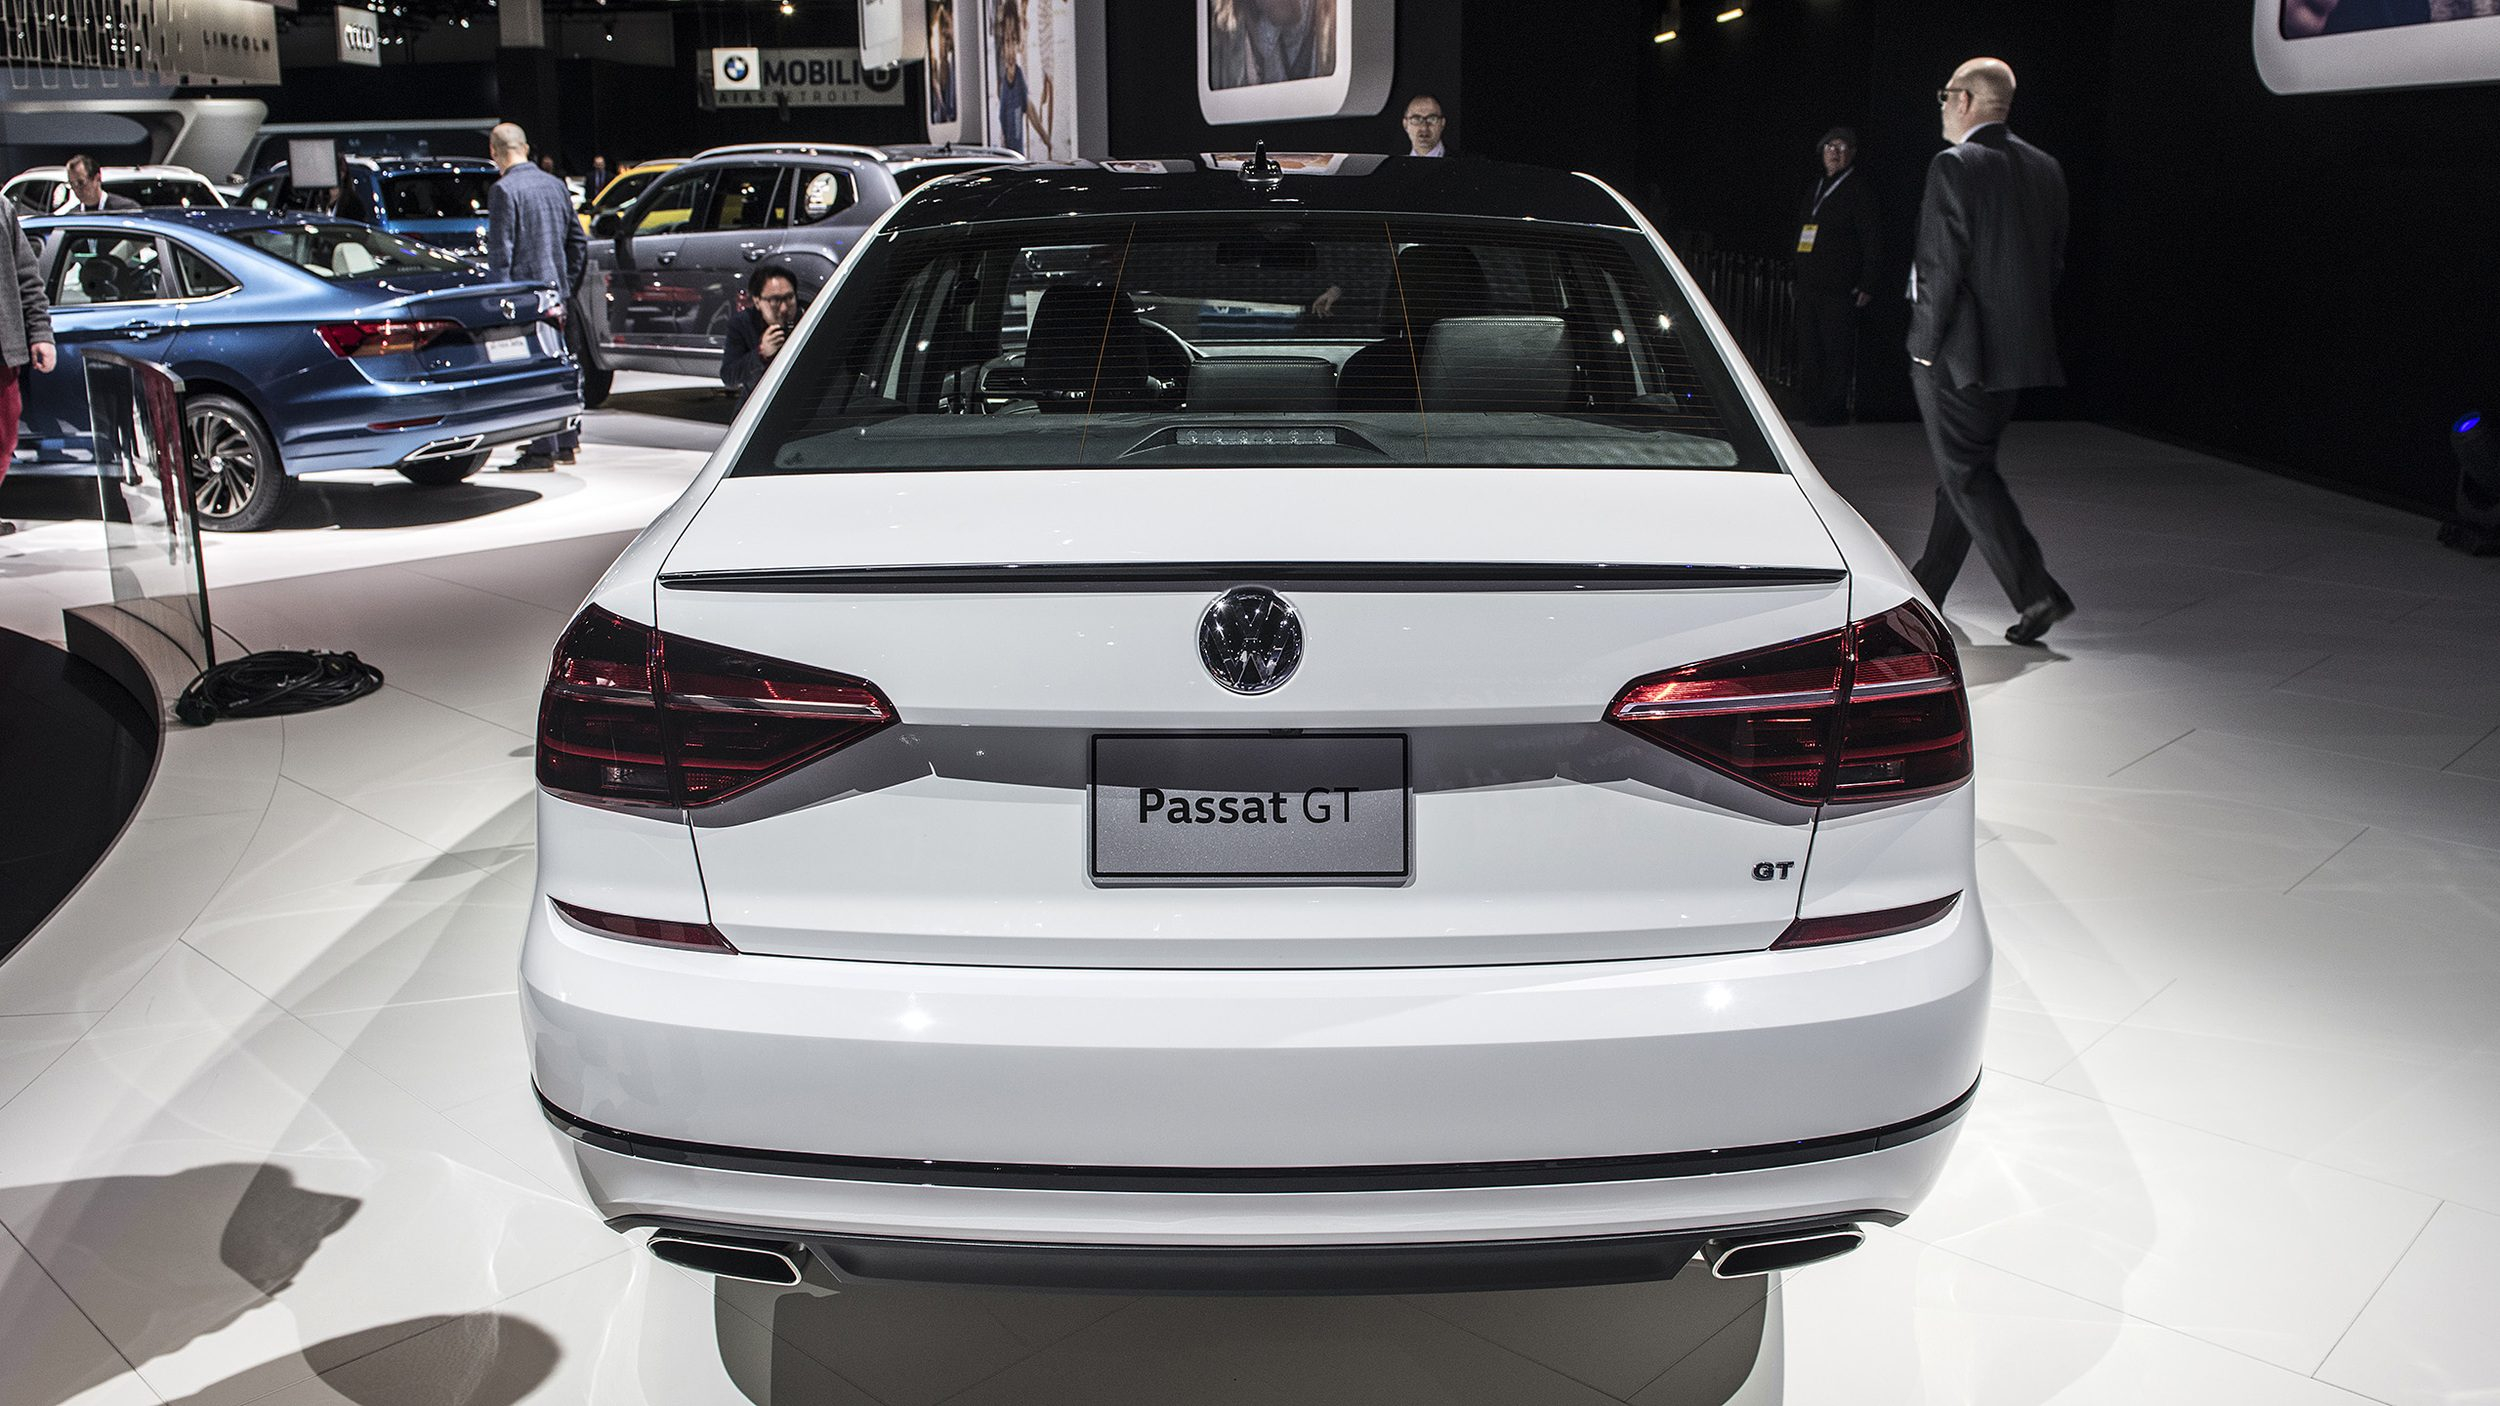 Volkswagen Passat GT Concept – Review Car